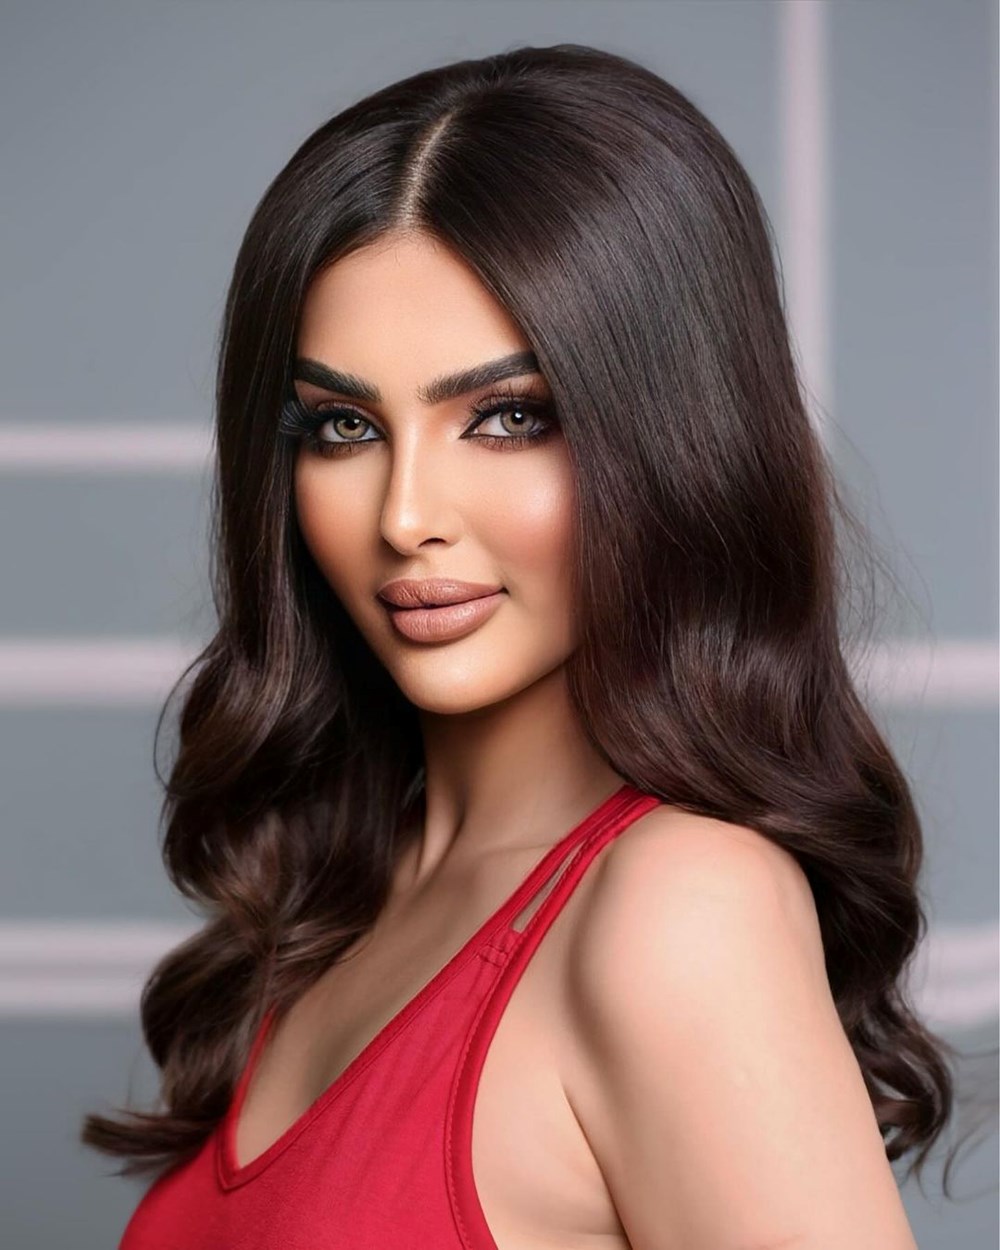 Kainat Güzeli olmak için yarışacaktı: Suudi Arabistanlı modelin yalanı ortaya çıktı - 5